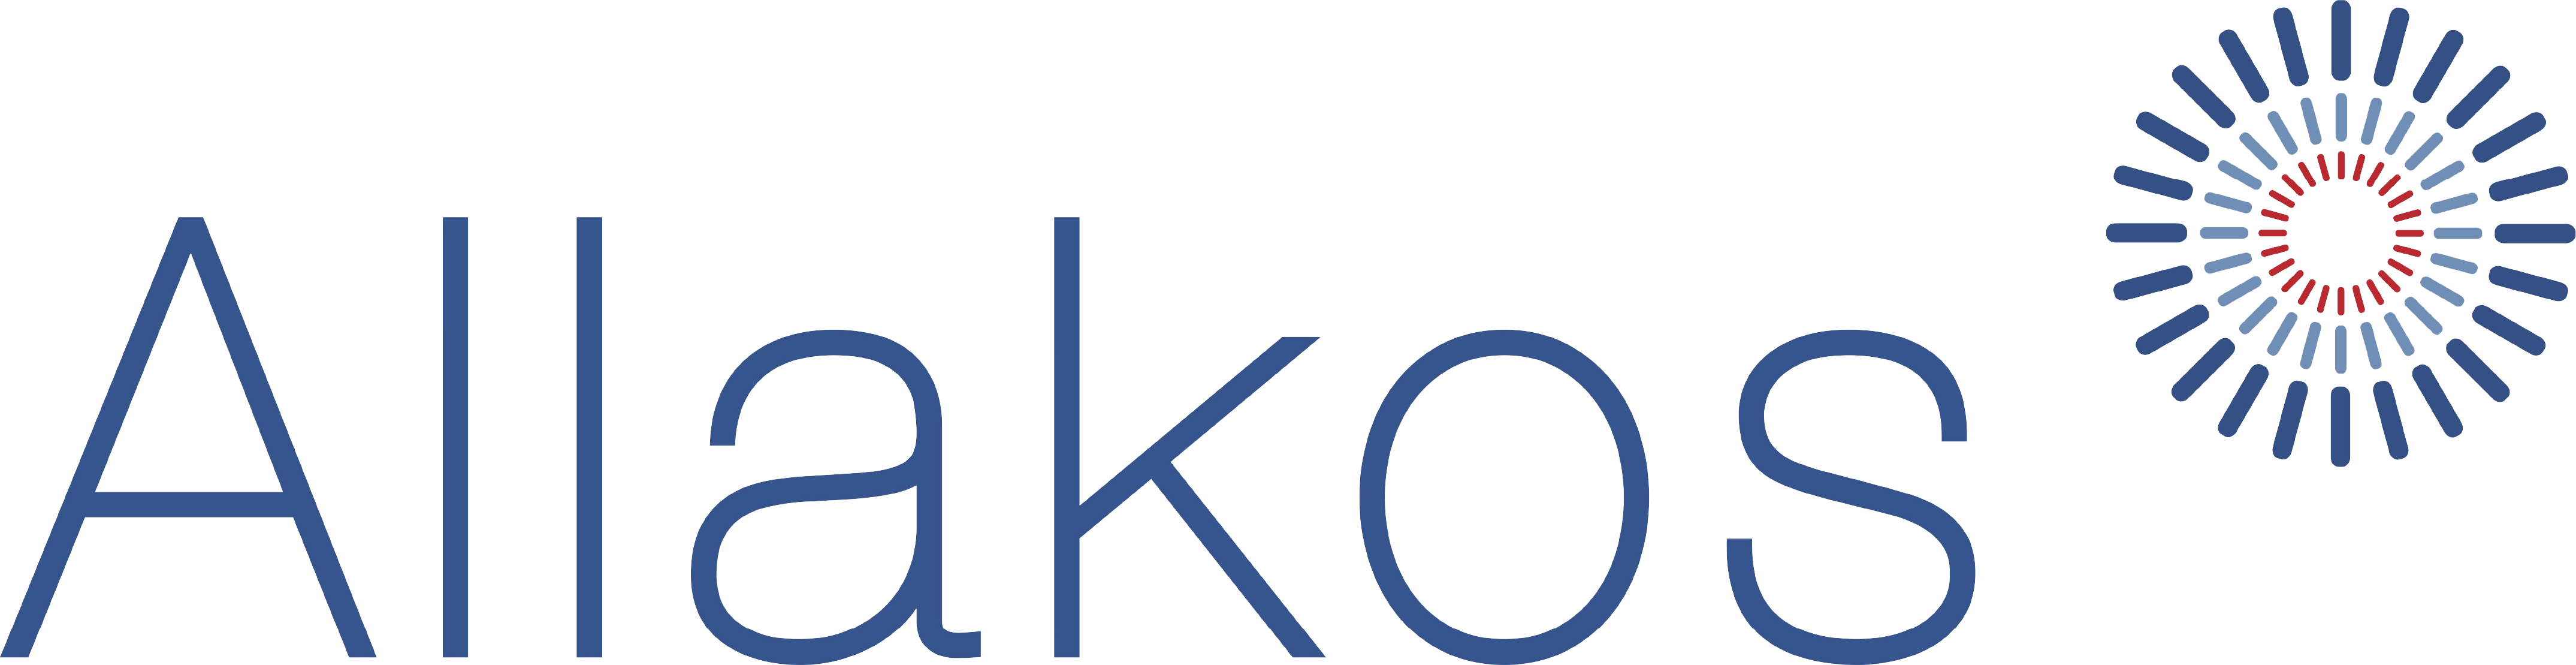 Allakos, Inc. logo